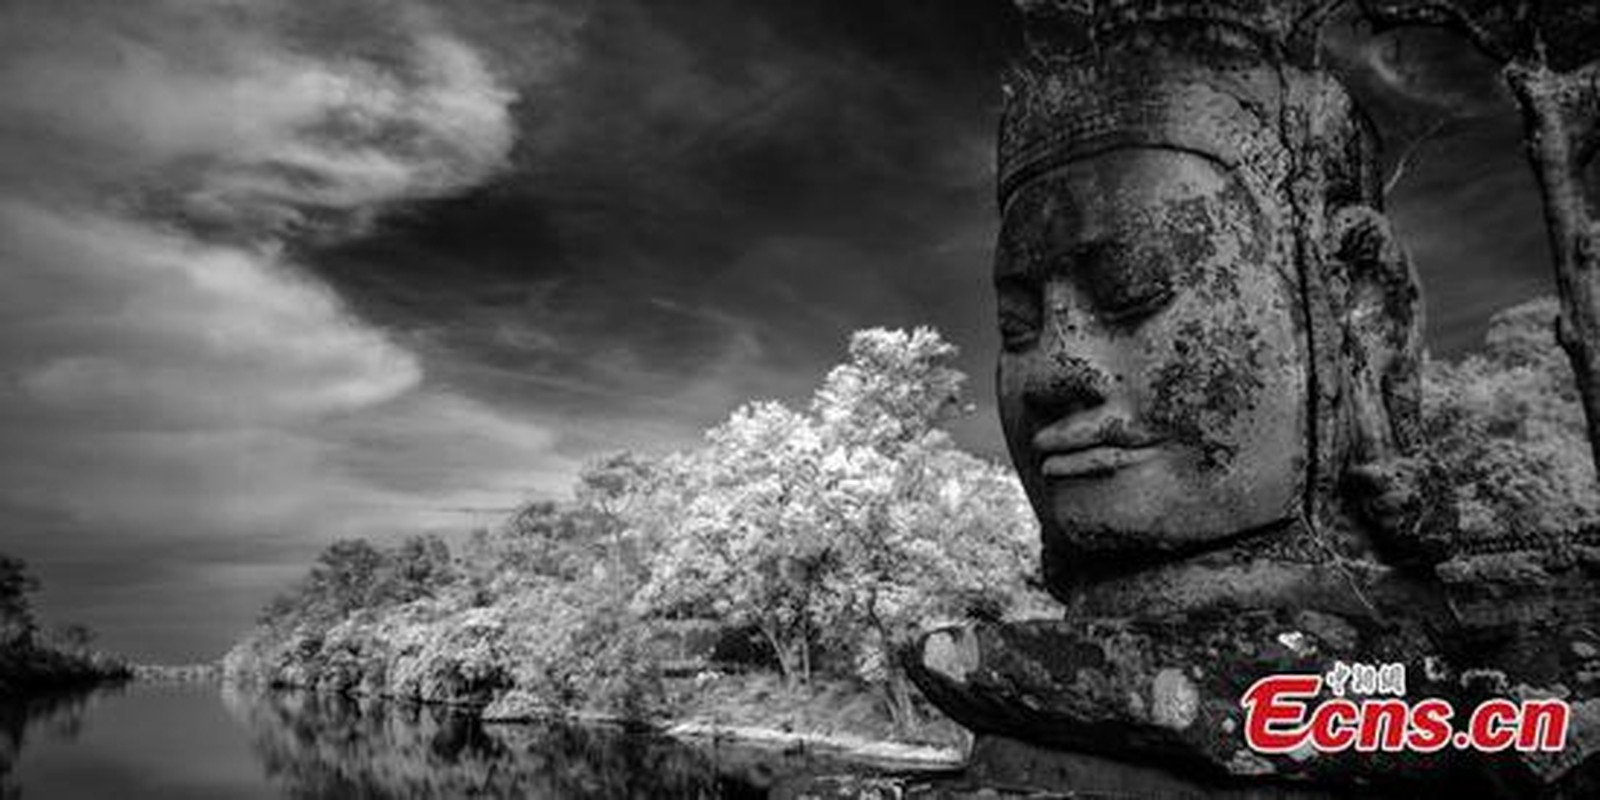 Ngat ngay ve dep cua nhung ngoi den o Angkor